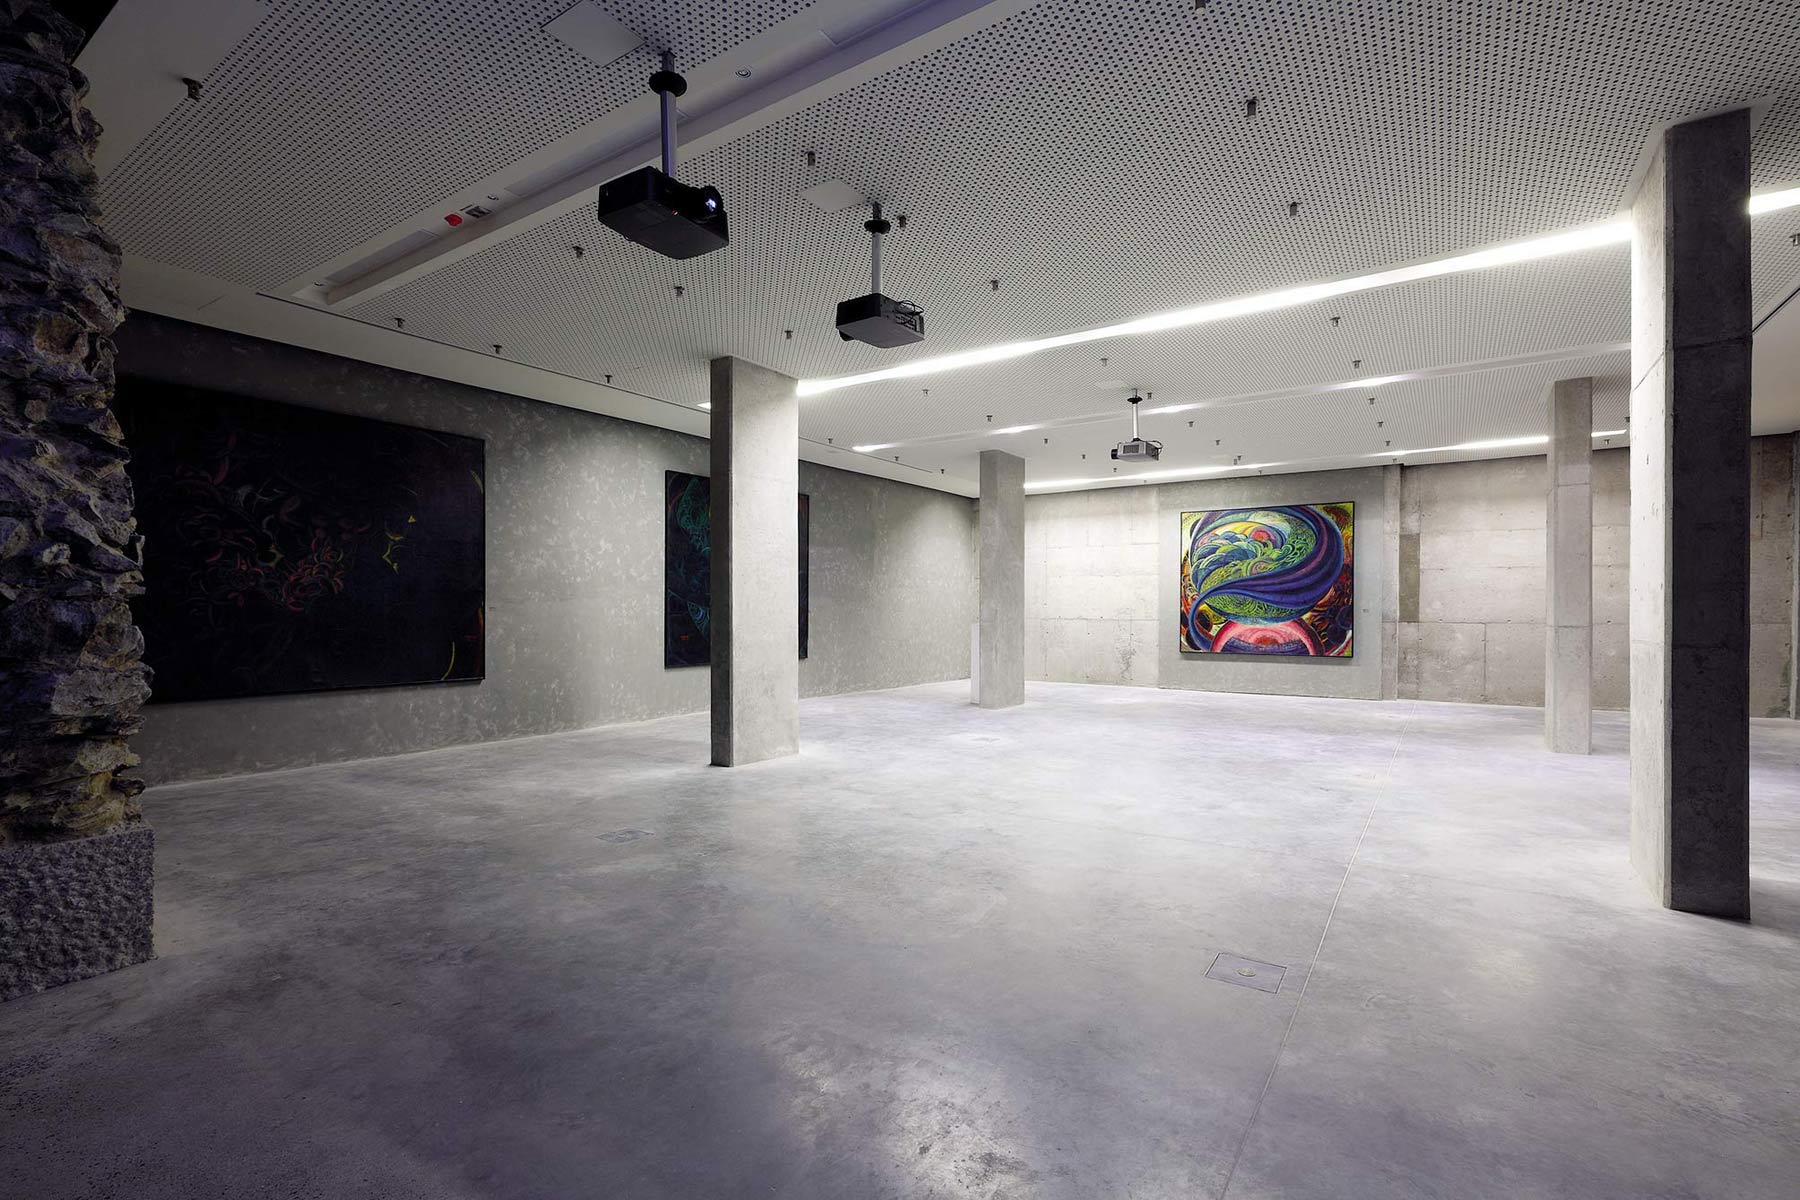 Cieľom výstavby suterénnych priestorov pod budovou Východoslovenskej galérie bolo vytvoriť výstavný priestor kompatibilný s možnosťami štandardných inštitúcií s podobným významom v Európe.